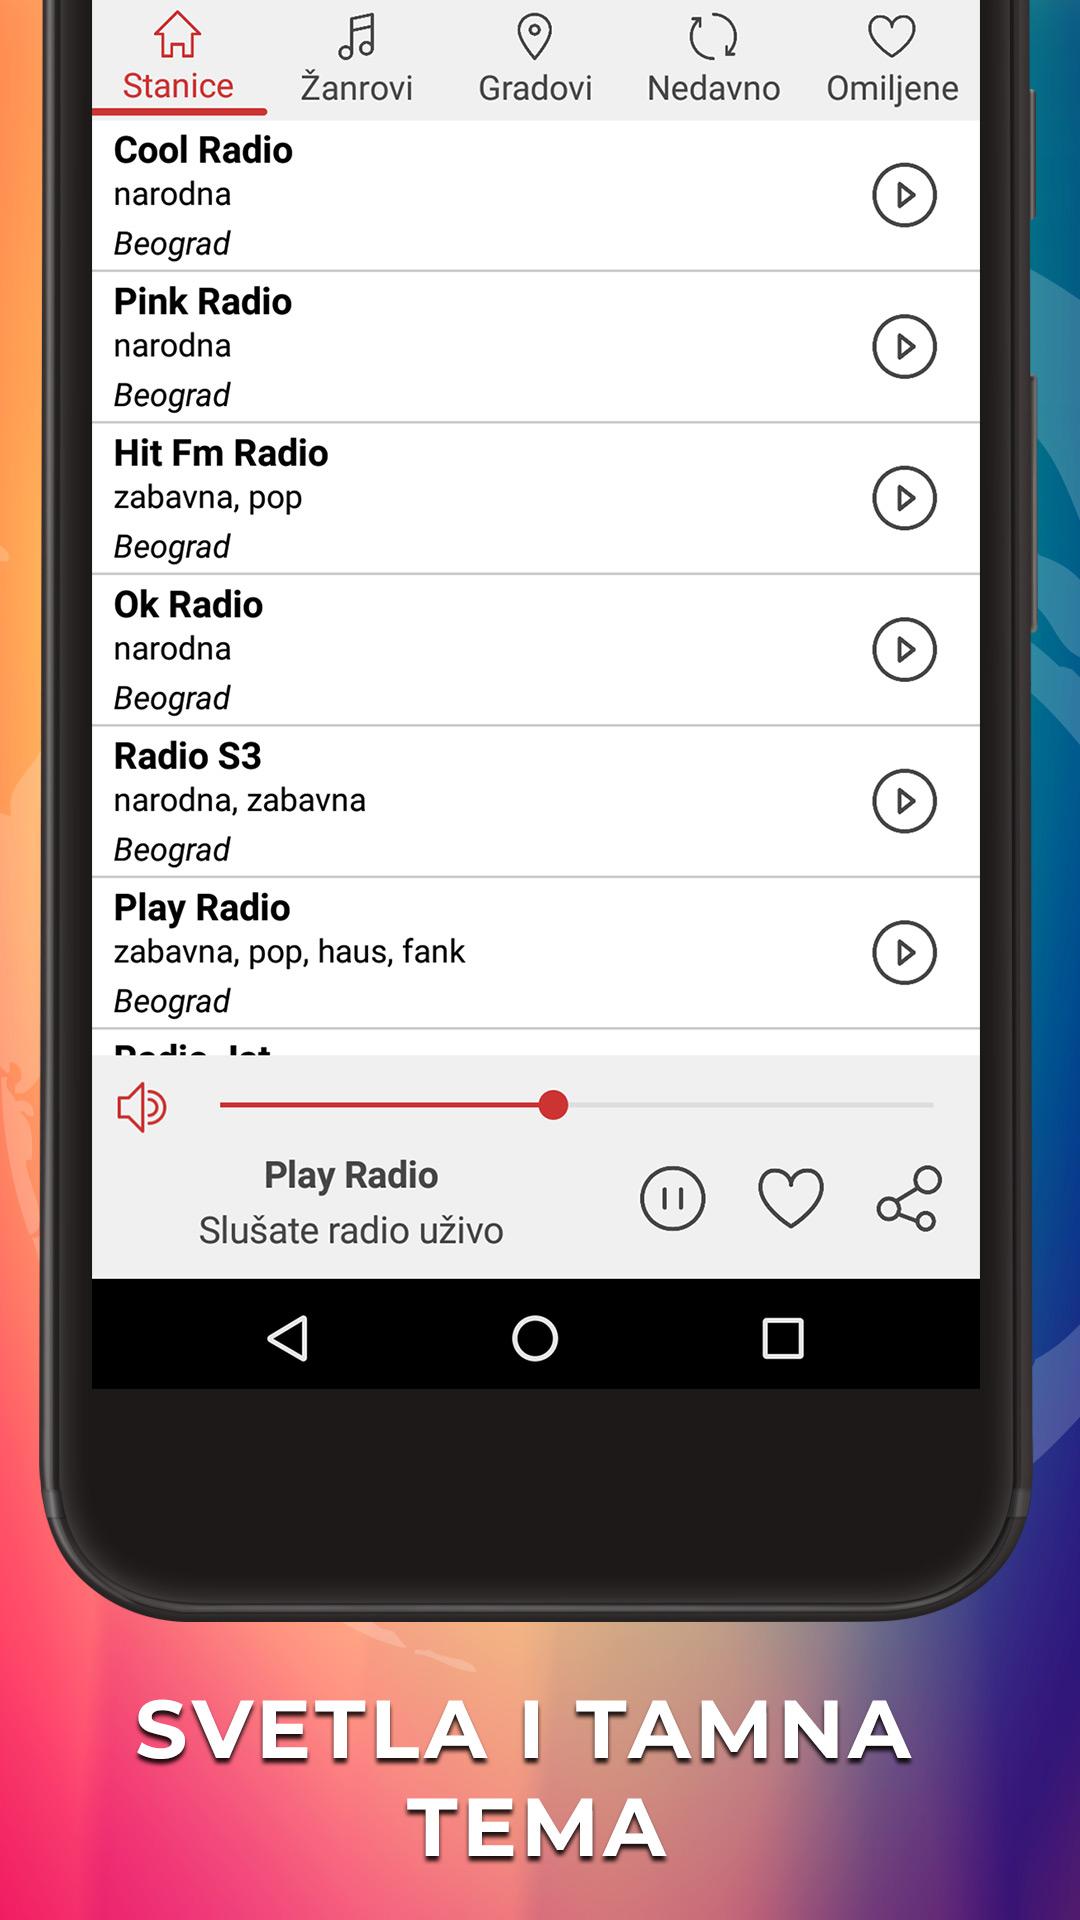 Radio Stanice Srbije Uživo FM for Android - APK Download